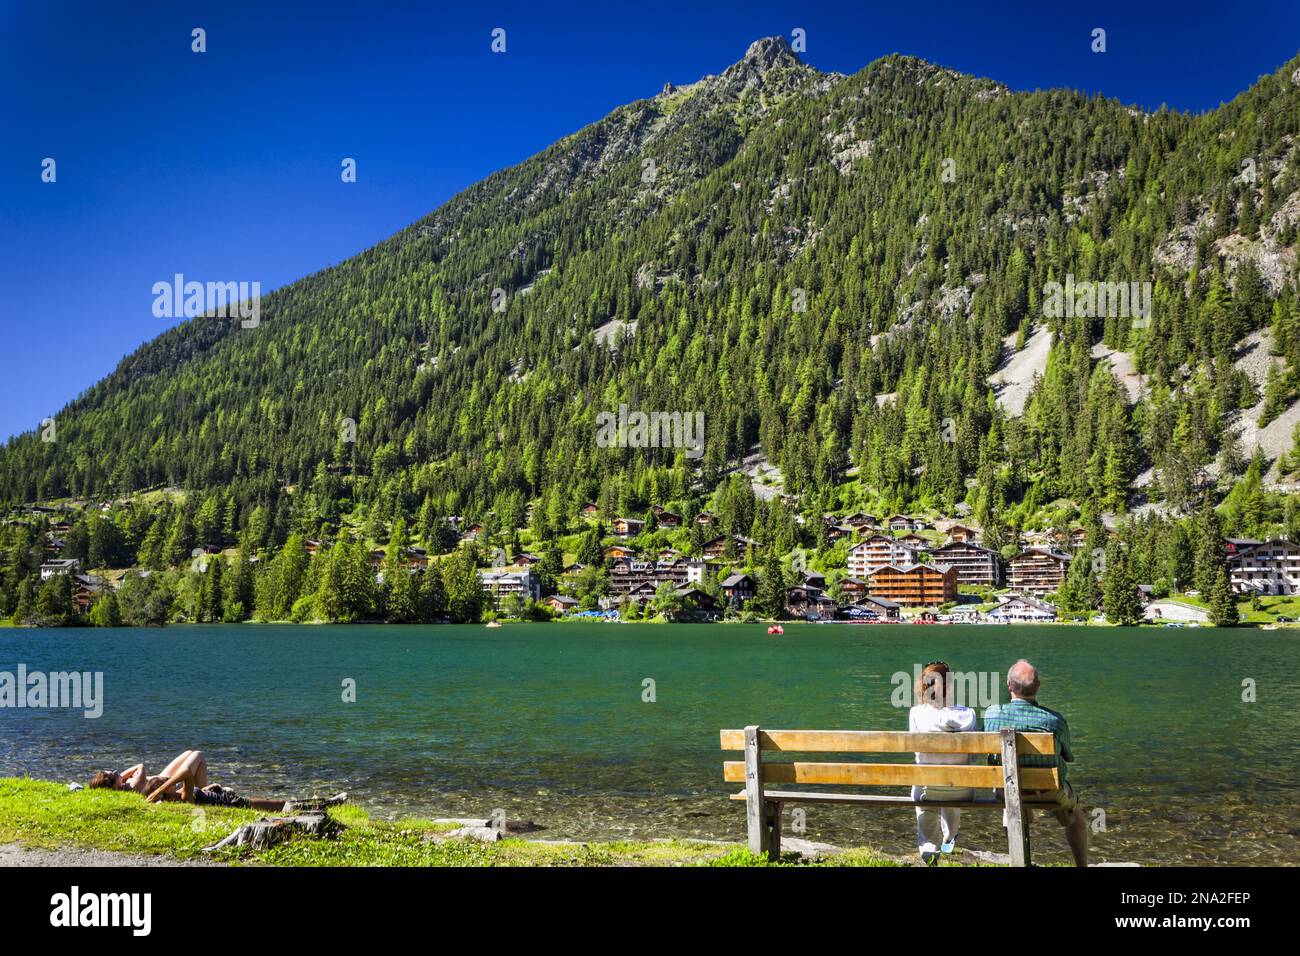 Una coppia si gode la vista su una panchina sulla riva del lago Champex sotto il cielo blu, montagne e resort sono sullo sfondo; Champex, Vallese, Svizzera Foto Stock